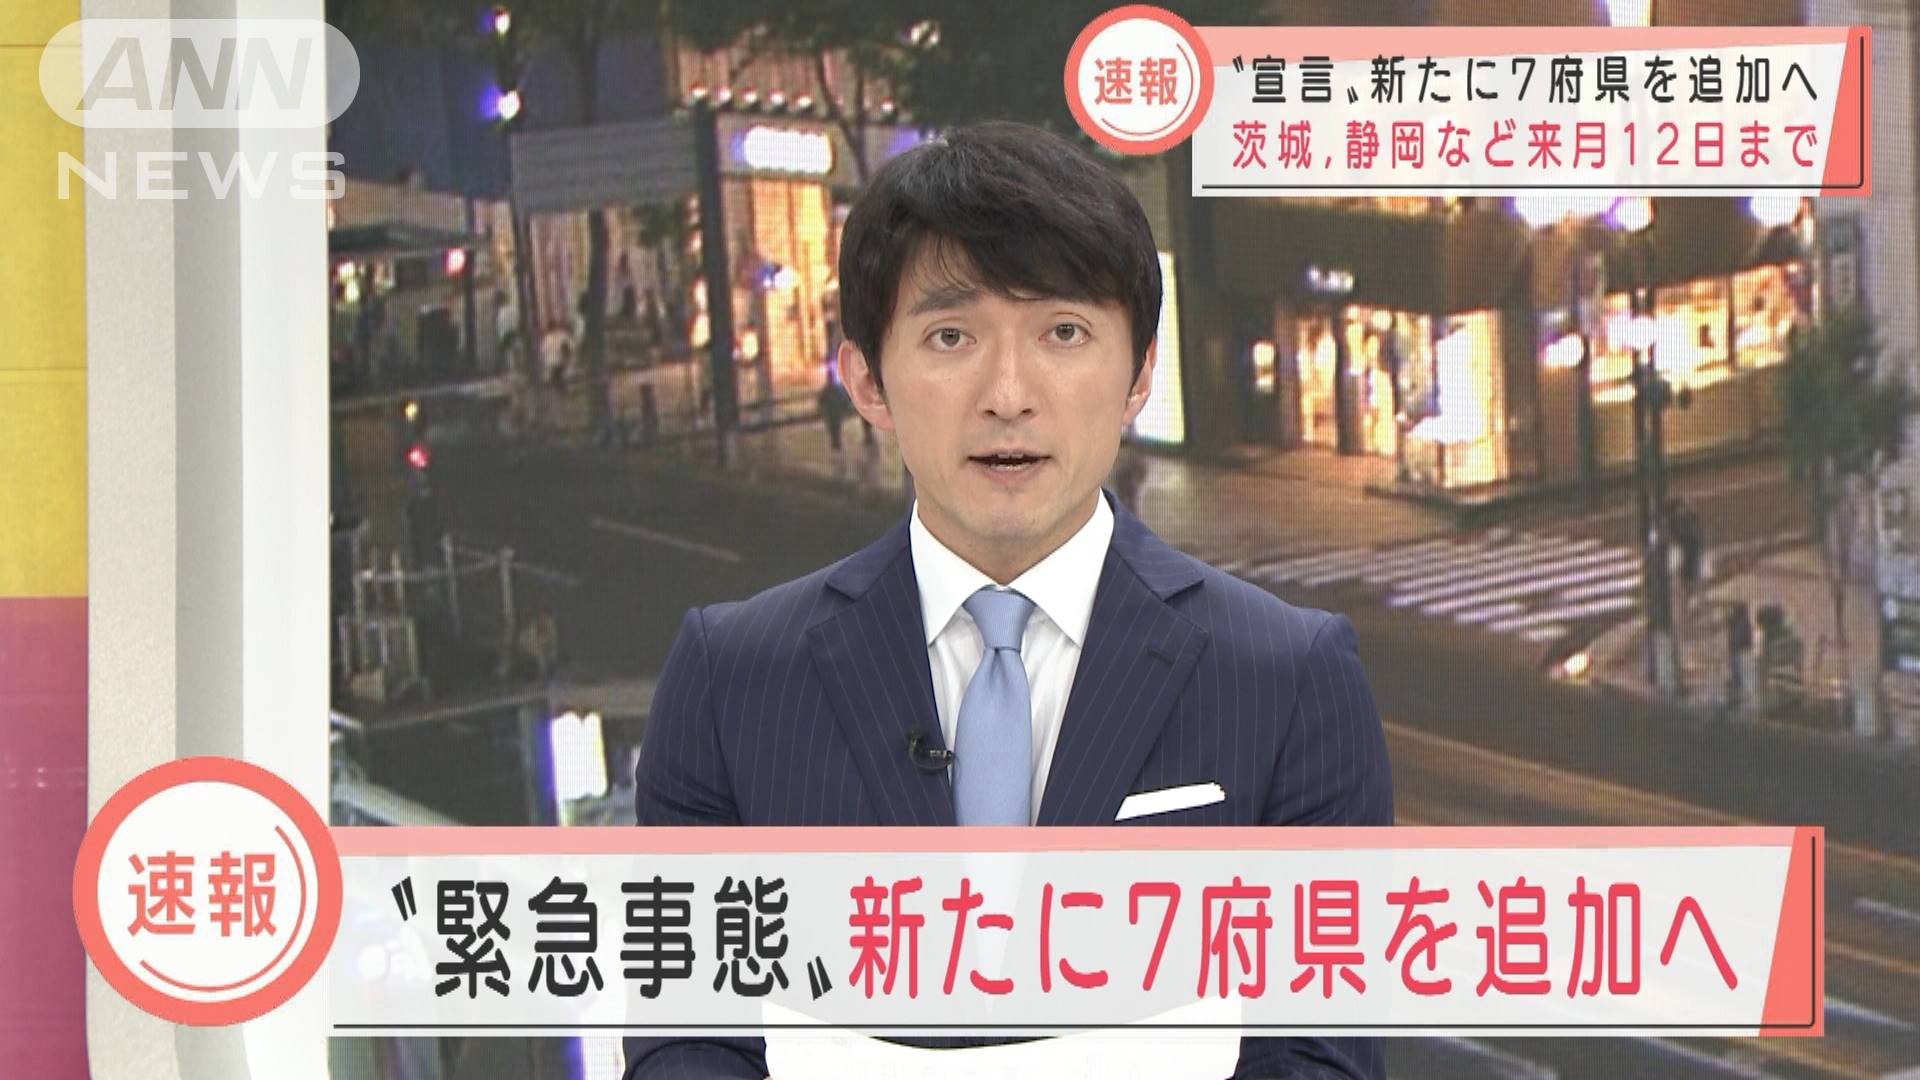 緊急事態宣言 茨城 静岡など新たに7府県を追加へ テレ朝news テレビ朝日のニュースサイト